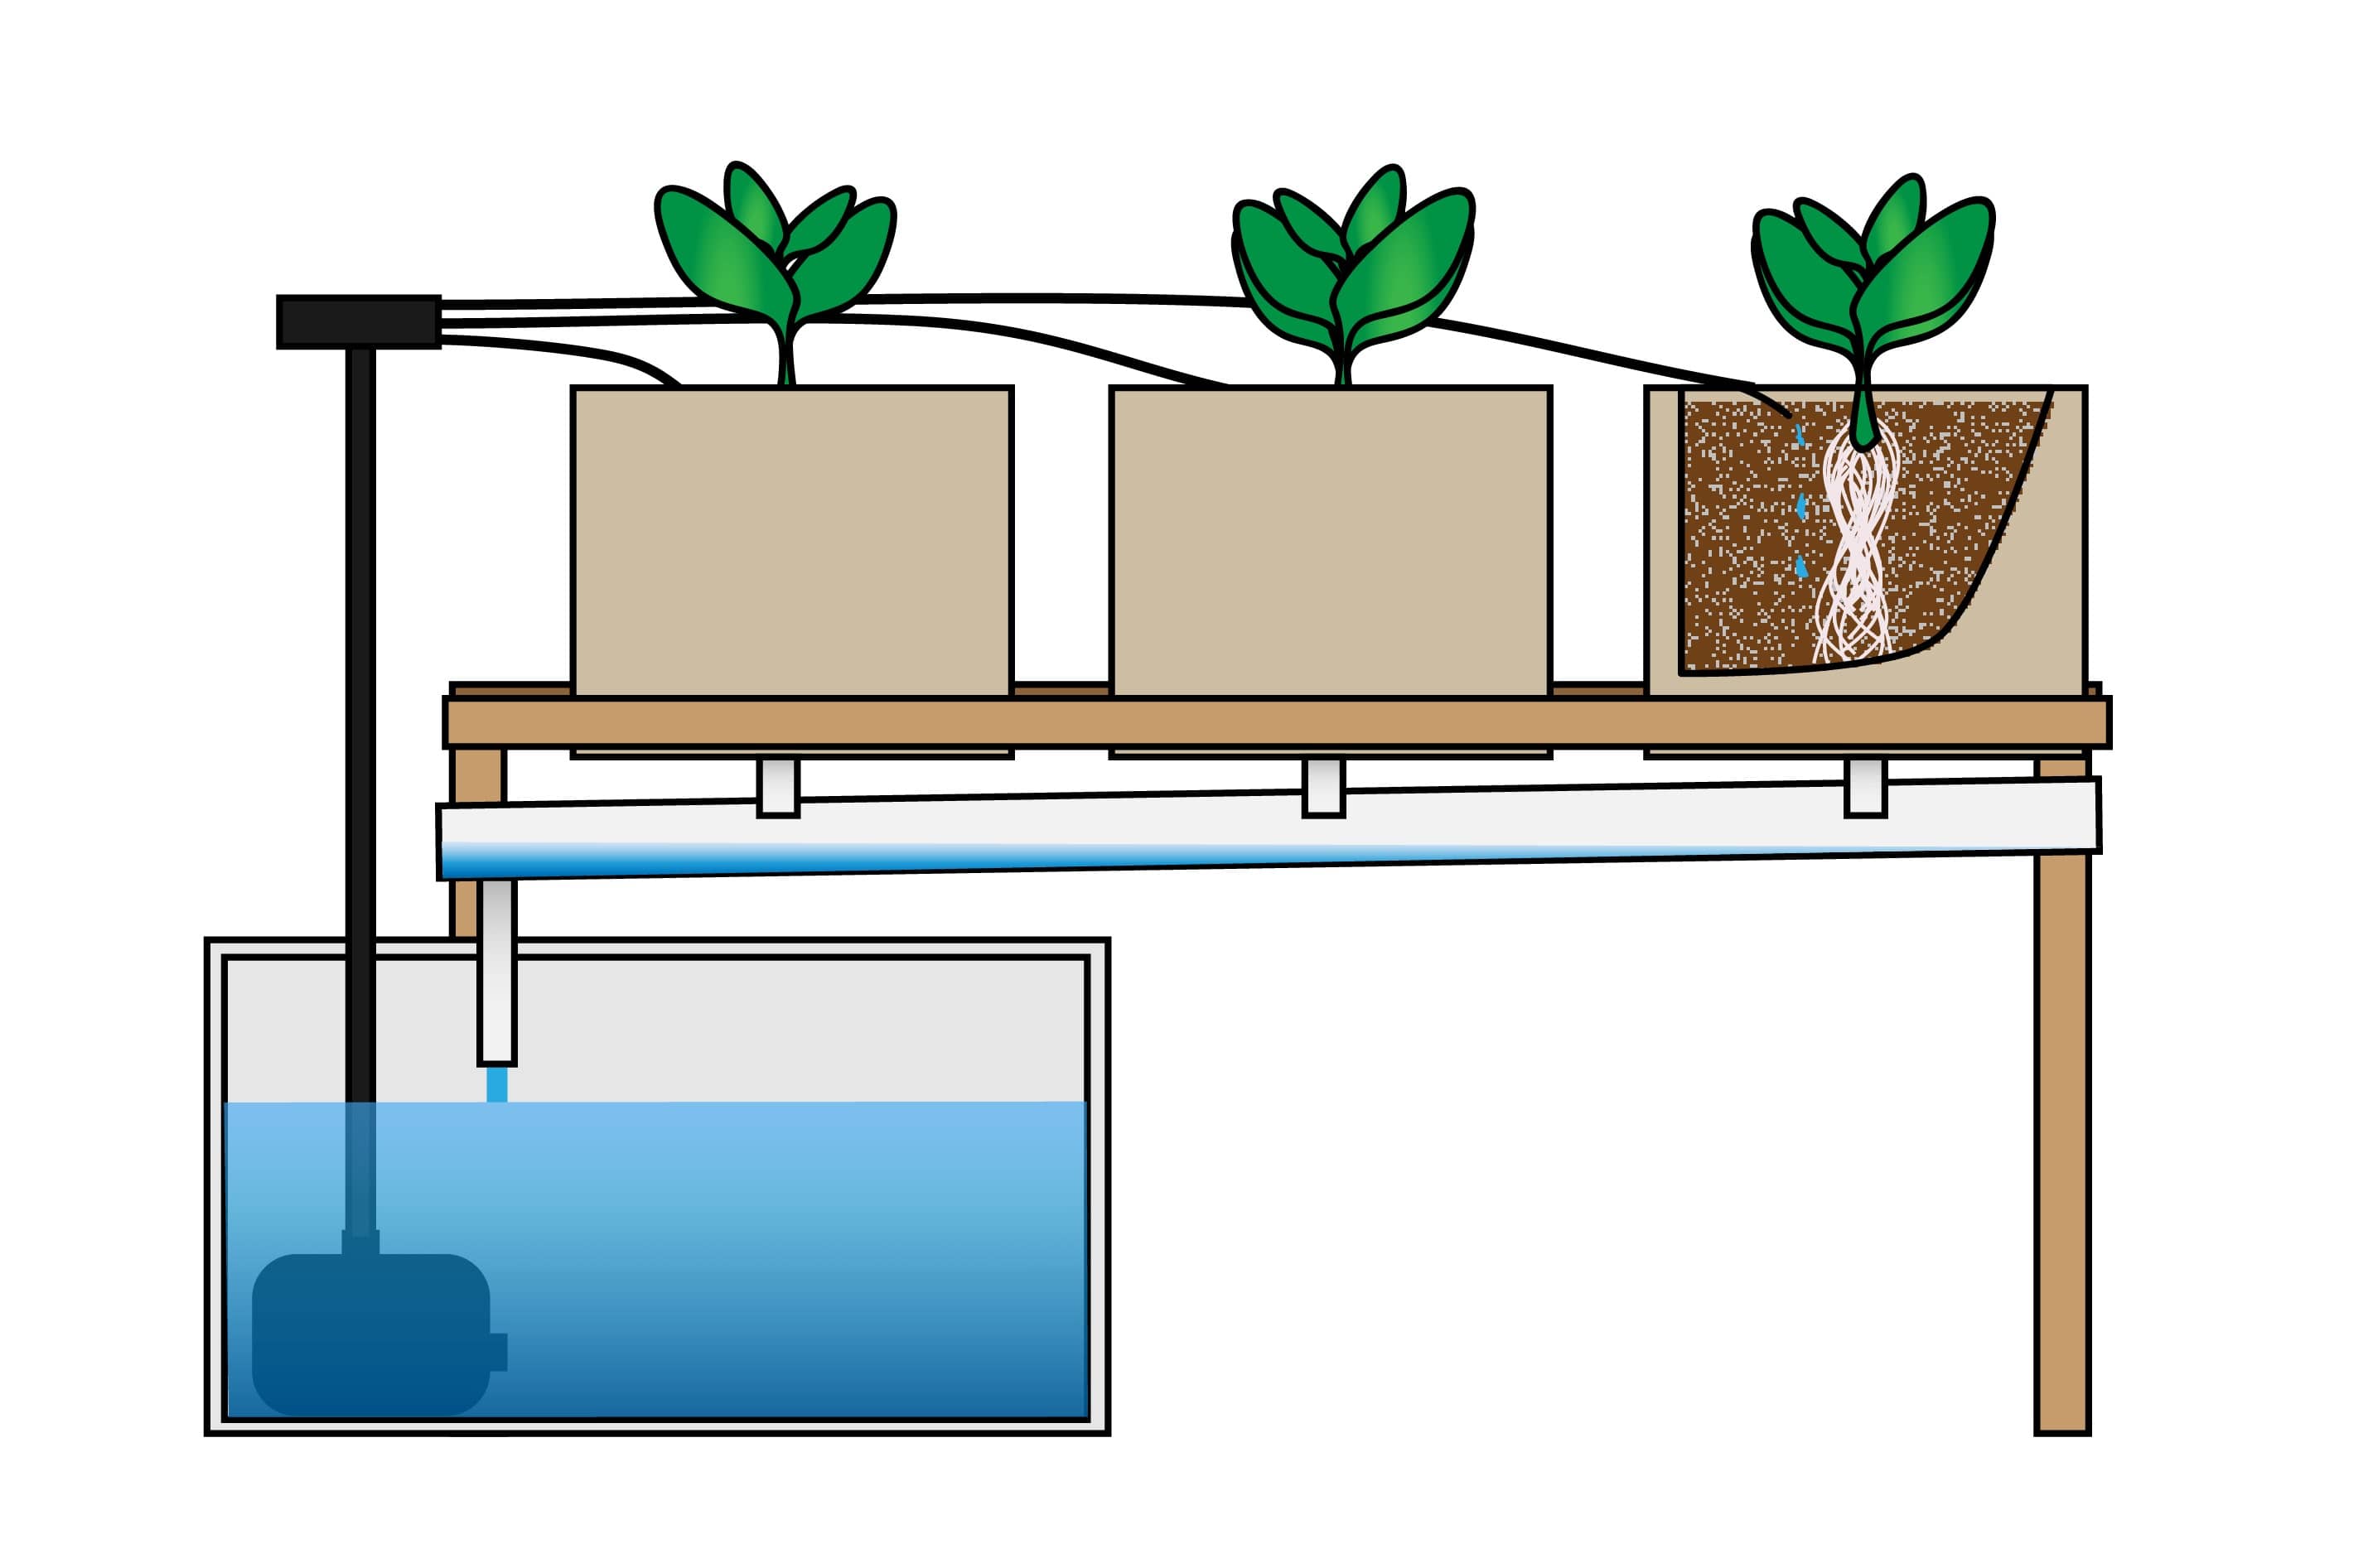 Hệ thống thủy canh nhỏ giọt (Drip hydroponic system)